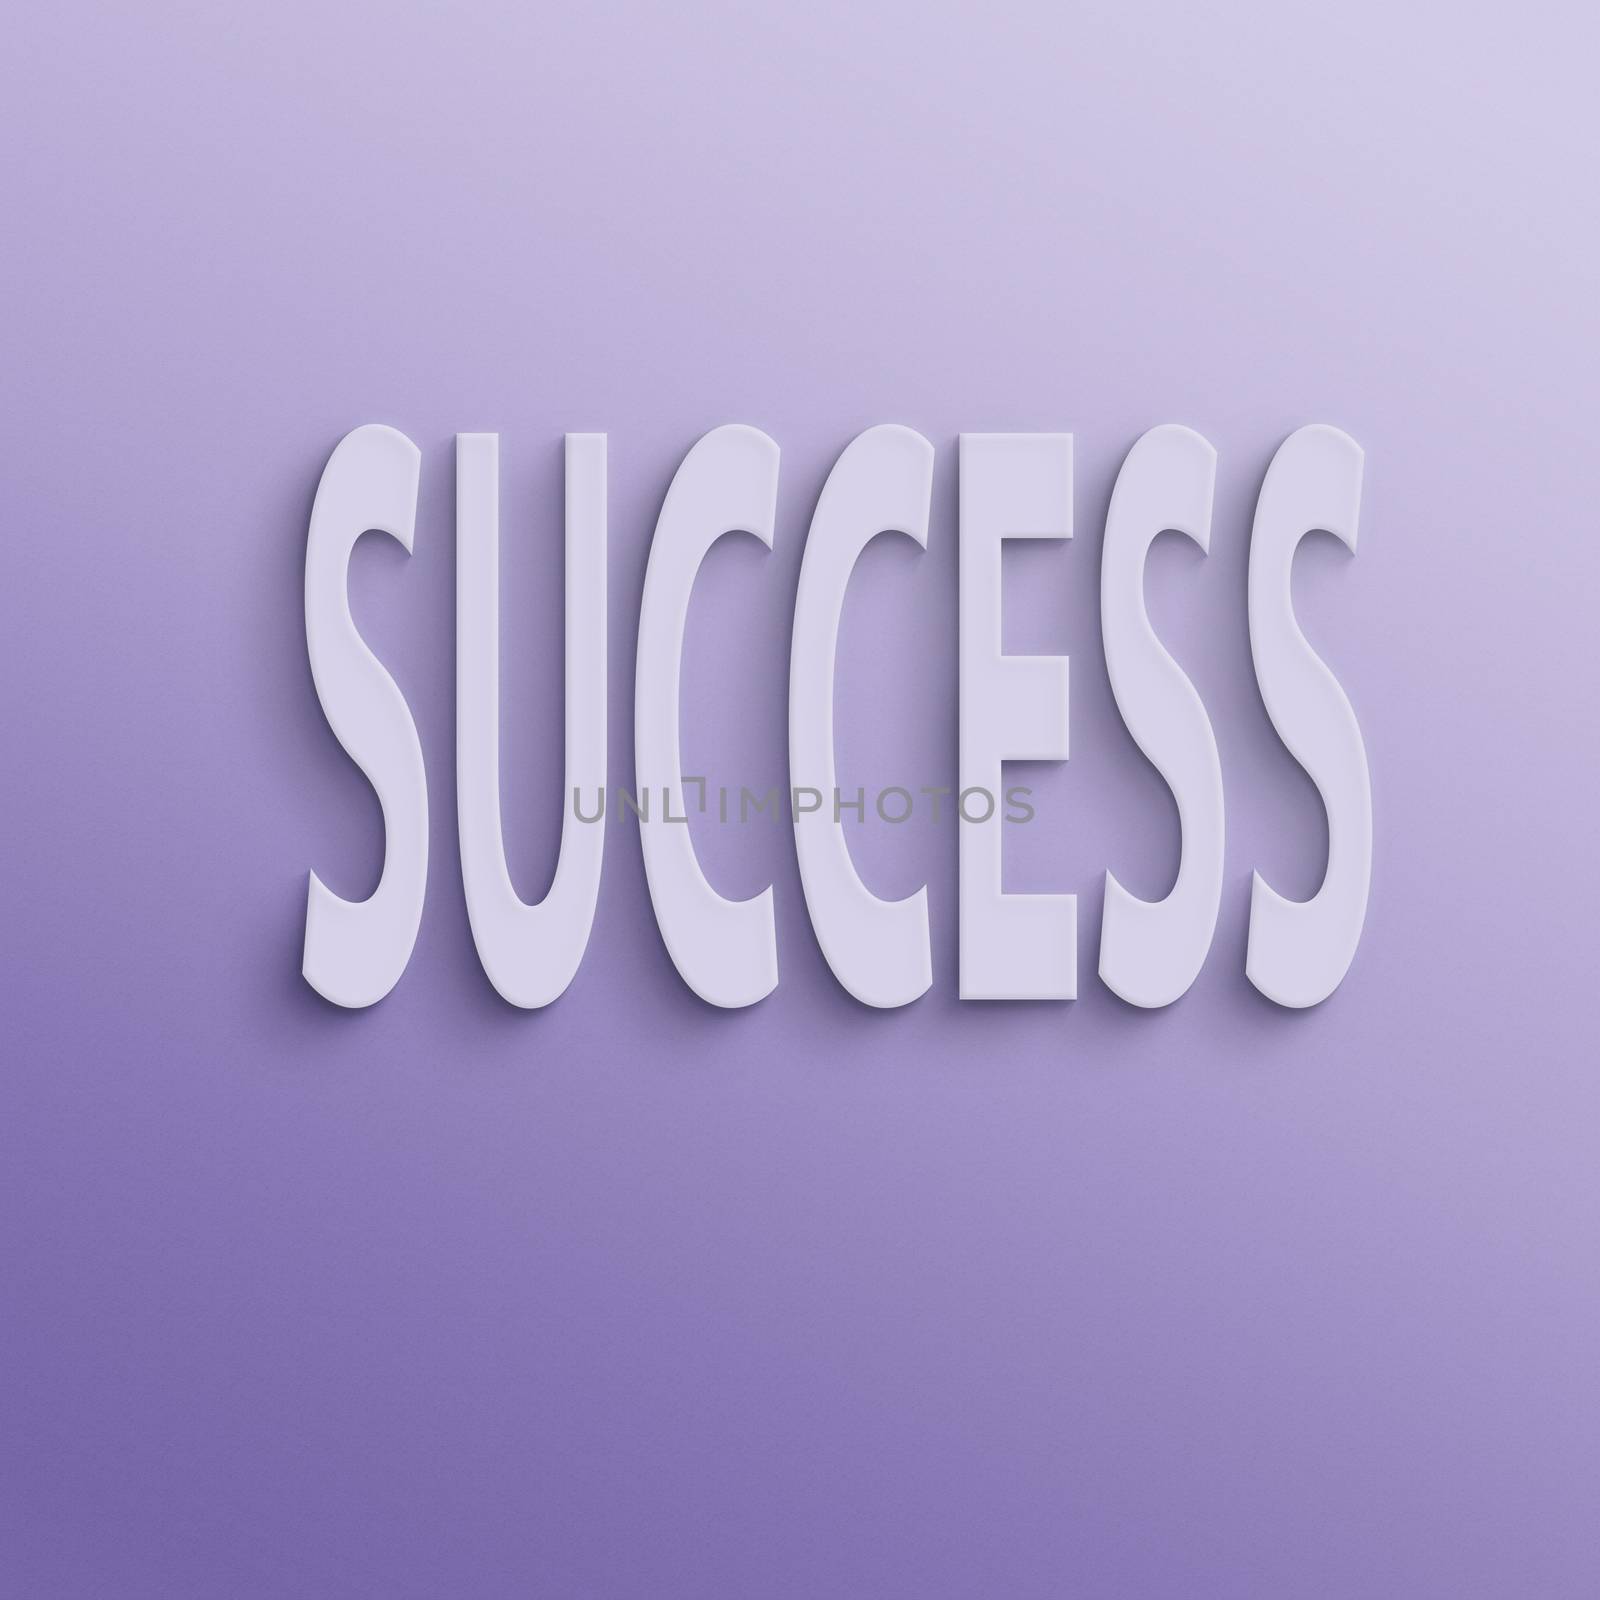 success by elwynn